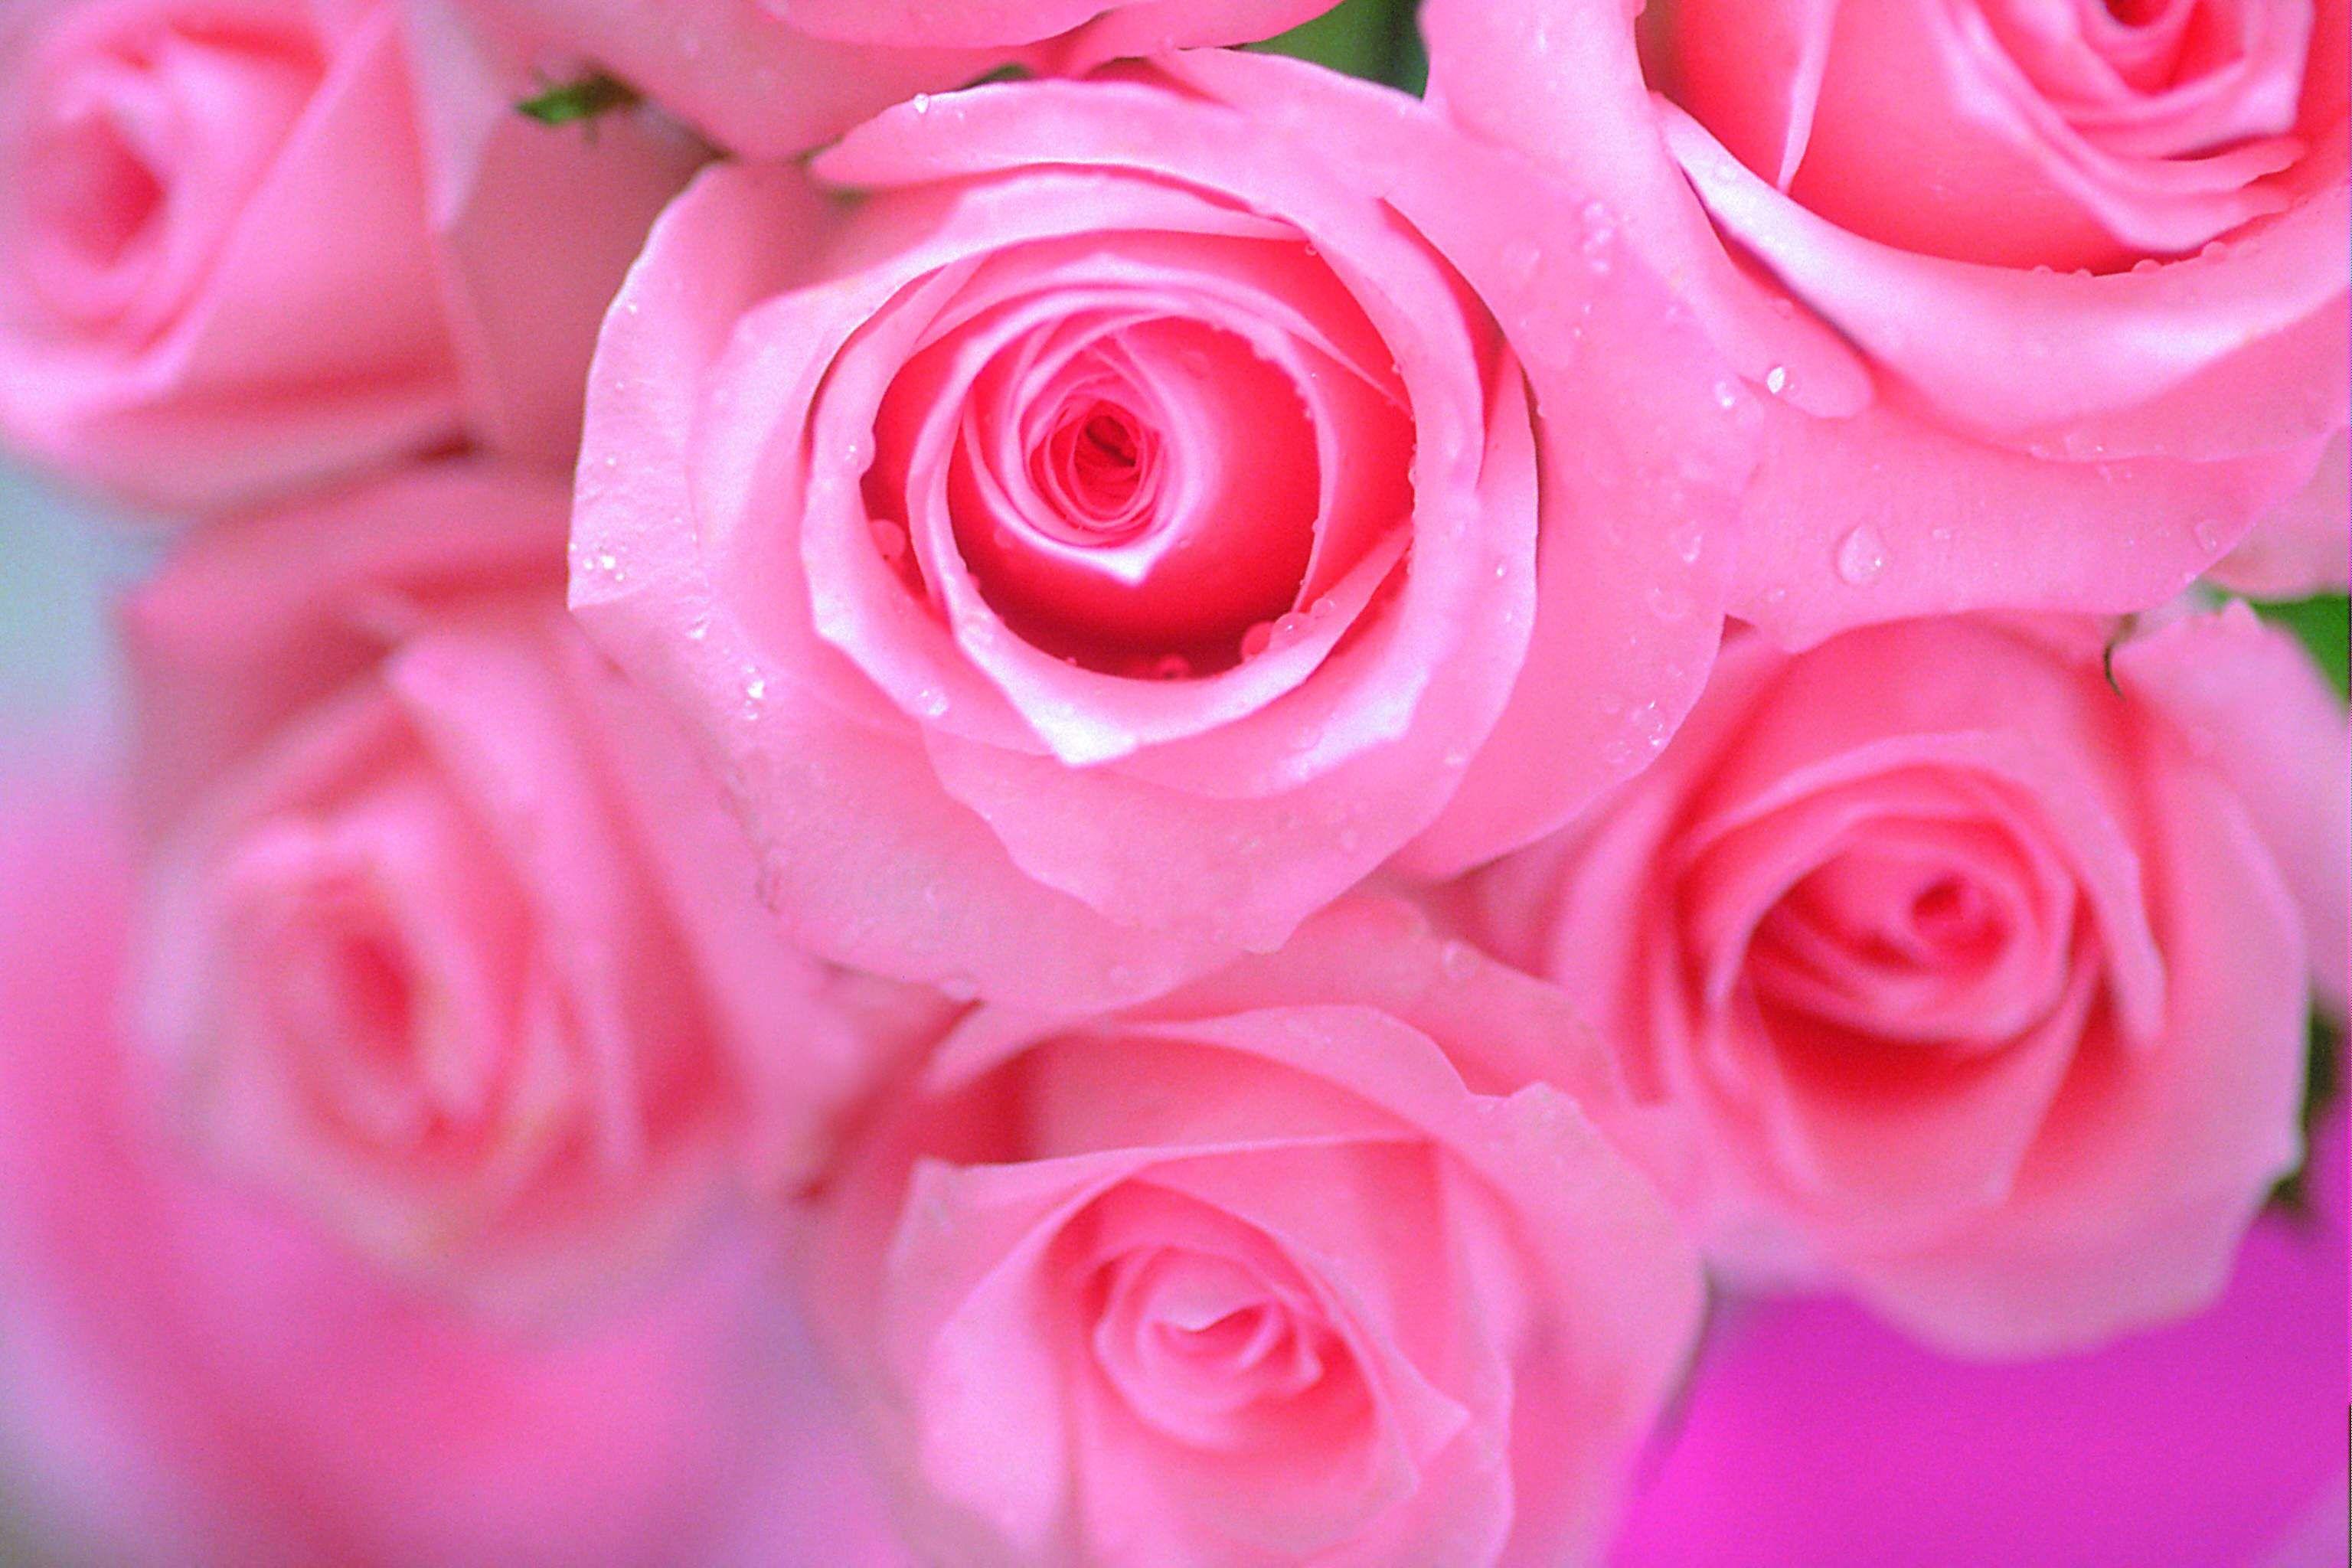 Hình nền hồng phấn 3072x2048.  Hình nền hoa hồng đẹp màu hồng